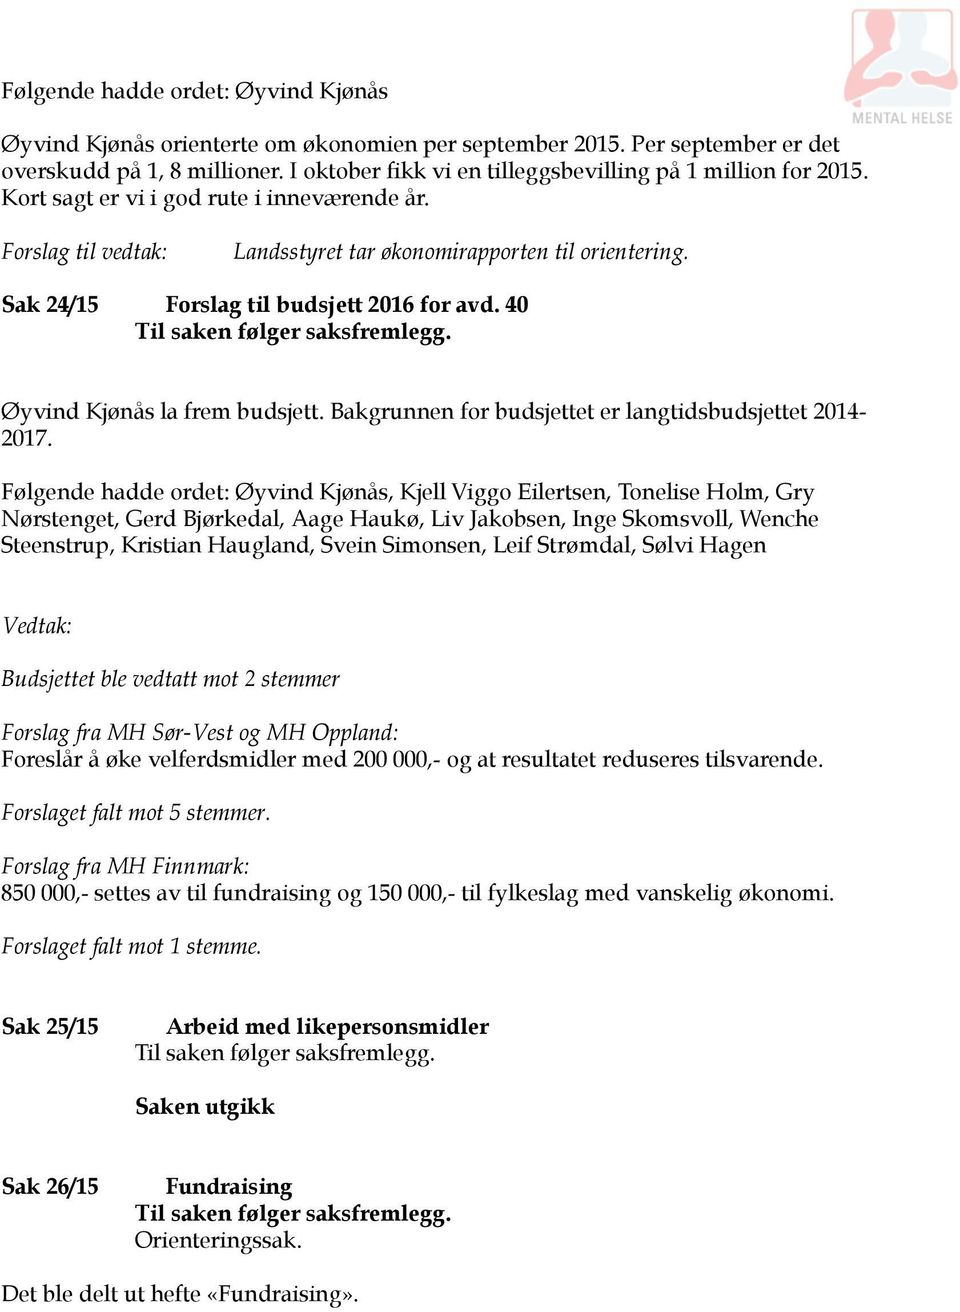 Sak 24/15 Forslag til budsjett 2016 for avd. 40 Øyvind Kjønås la frem budsjett. Bakgrunnen for budsjettet er langtidsbudsjettet 2014-2017.